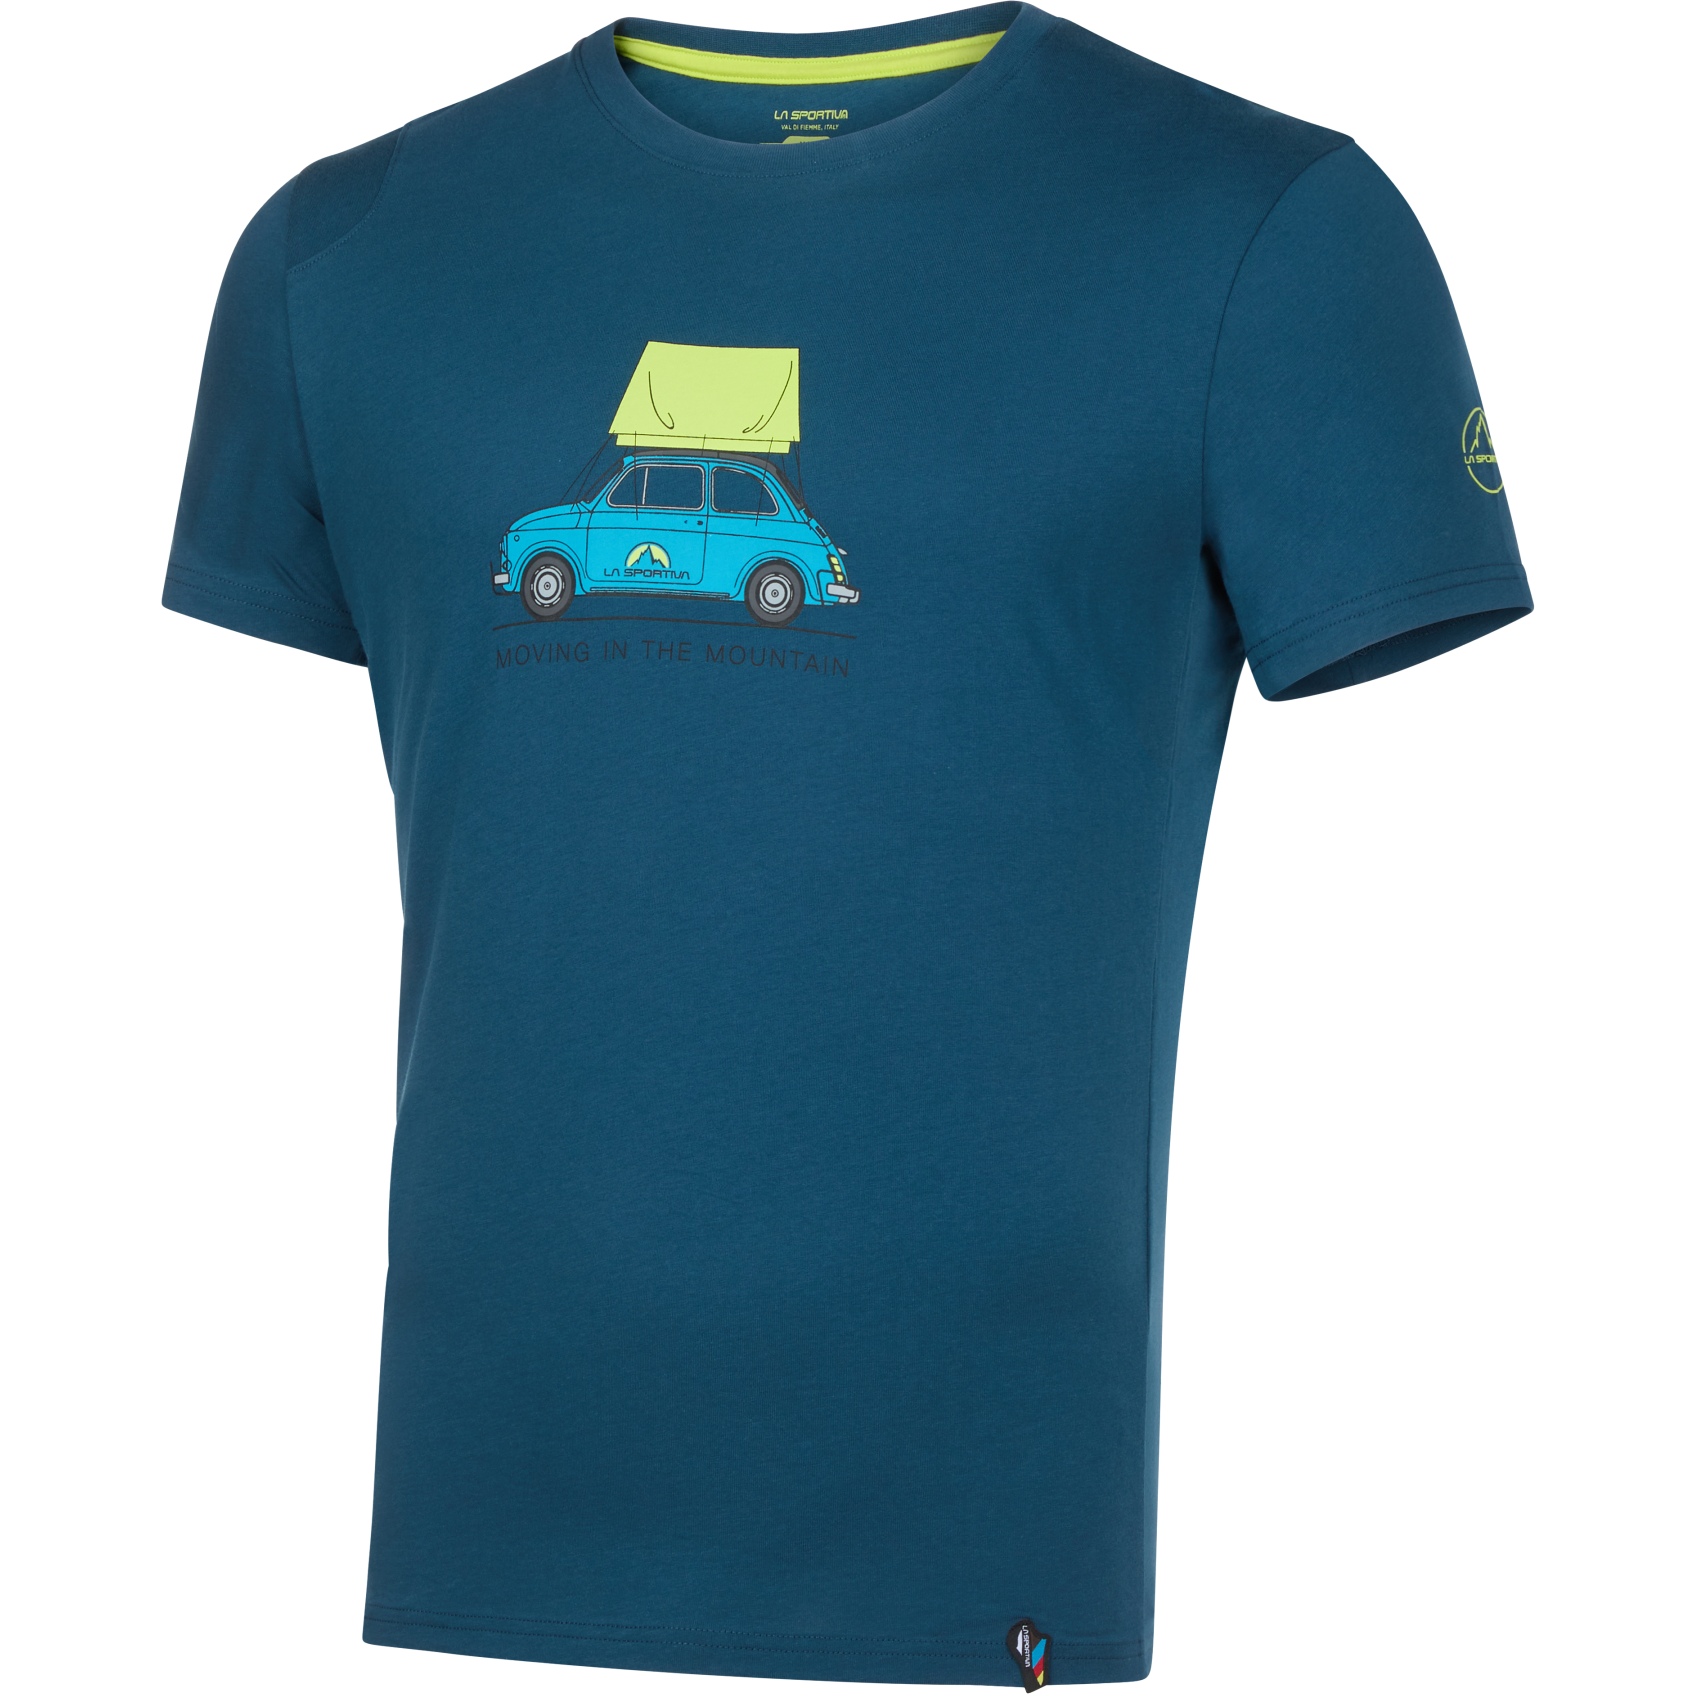 Picture of La Sportiva Cinquecento T-Shirt Men - Storm Blue/Lime Punch